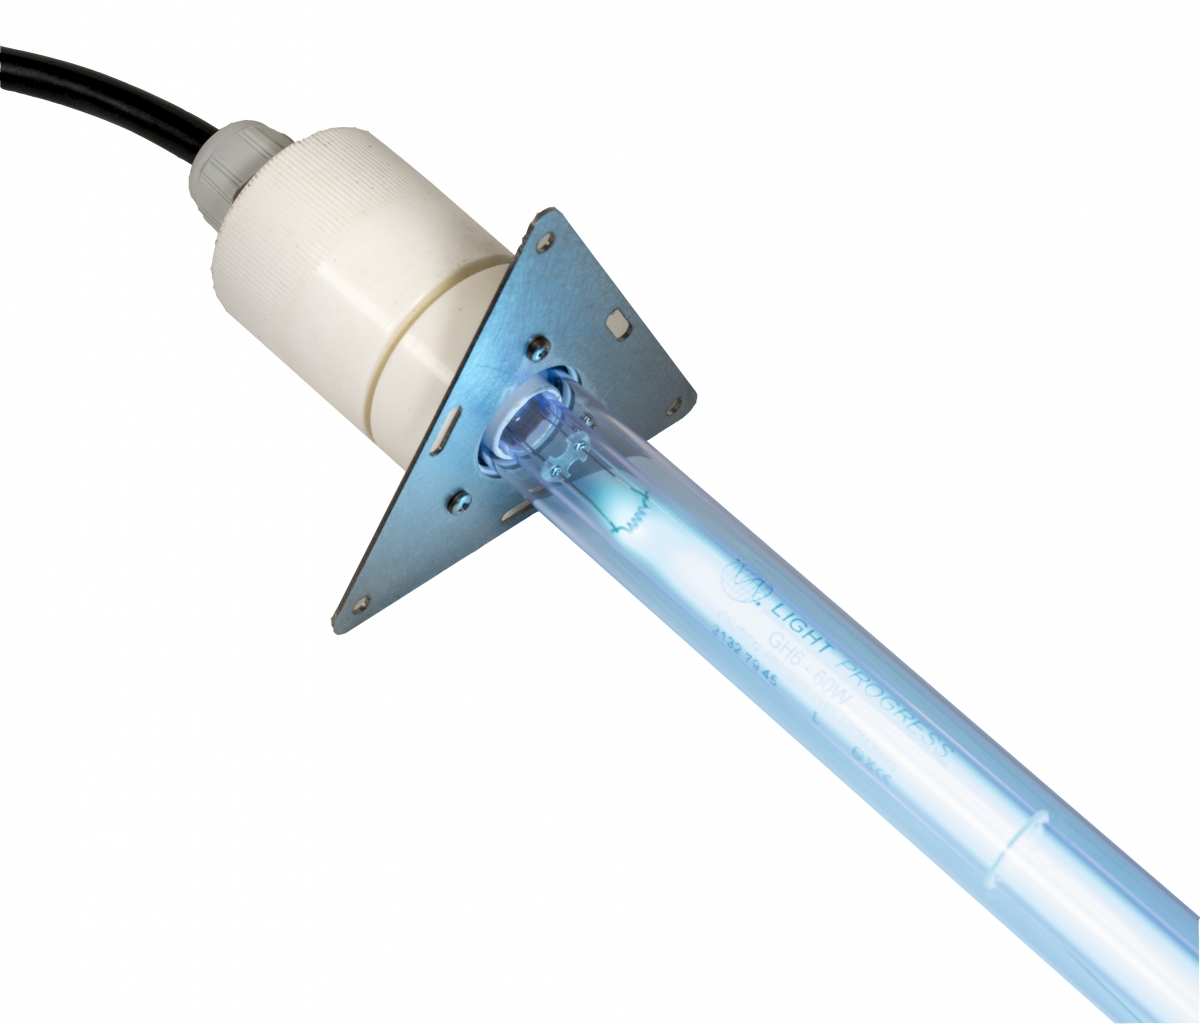  | Professionelle Lösungen für die UV-C Desinfektion Light Progress